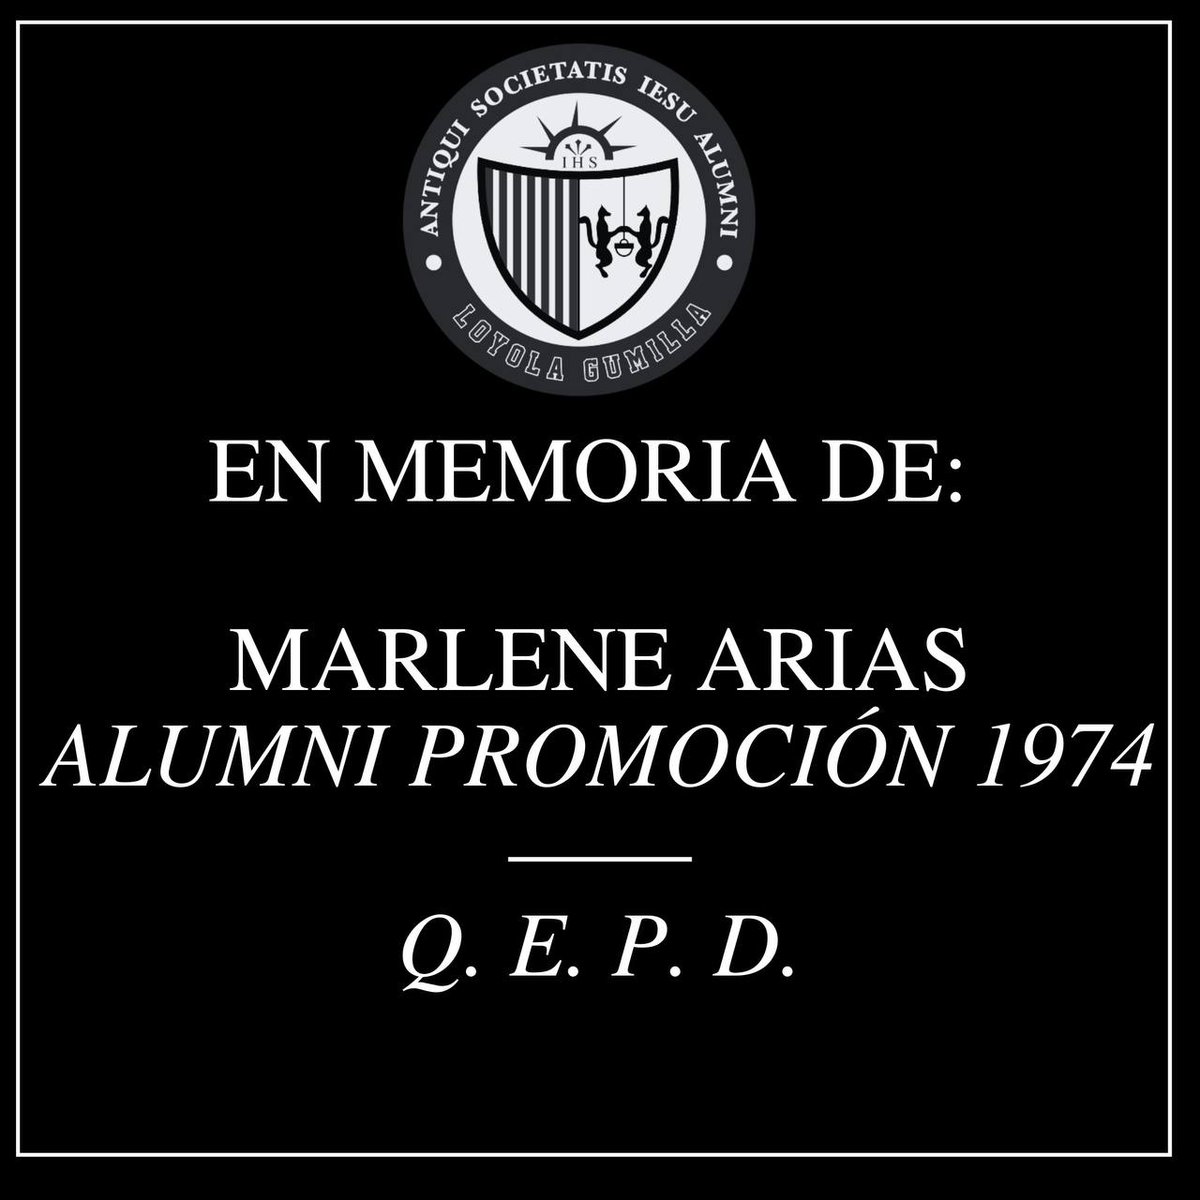 Nos unimos al duelo por el fallecimiento de Marlene Arias, egresada del Colegio🖤🤲🏻, quien falleció el #31ene de 2023.

Unidos en oración con sus seres queridos, especialmente con su familia, amigos y compañeros de la promoción de 1974 🙏🏼.